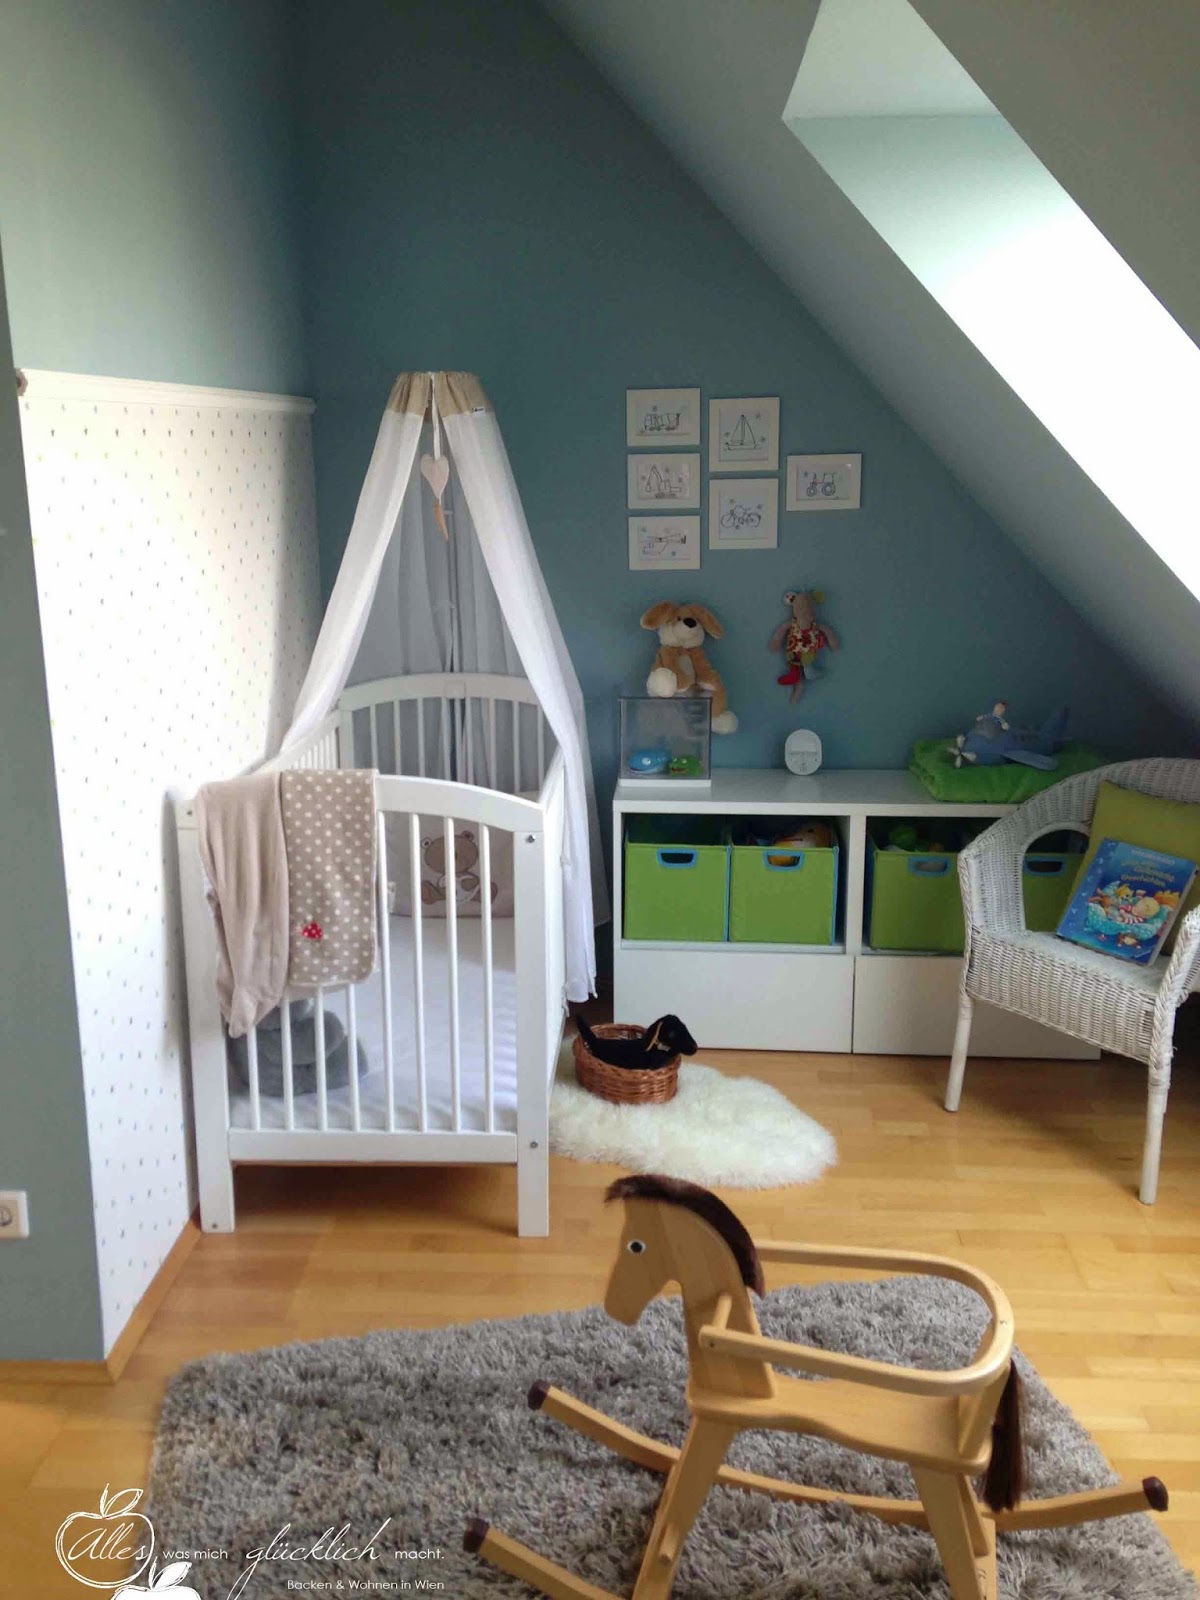 Das neue Kinderzimmer oder das Reich des kleinen Max